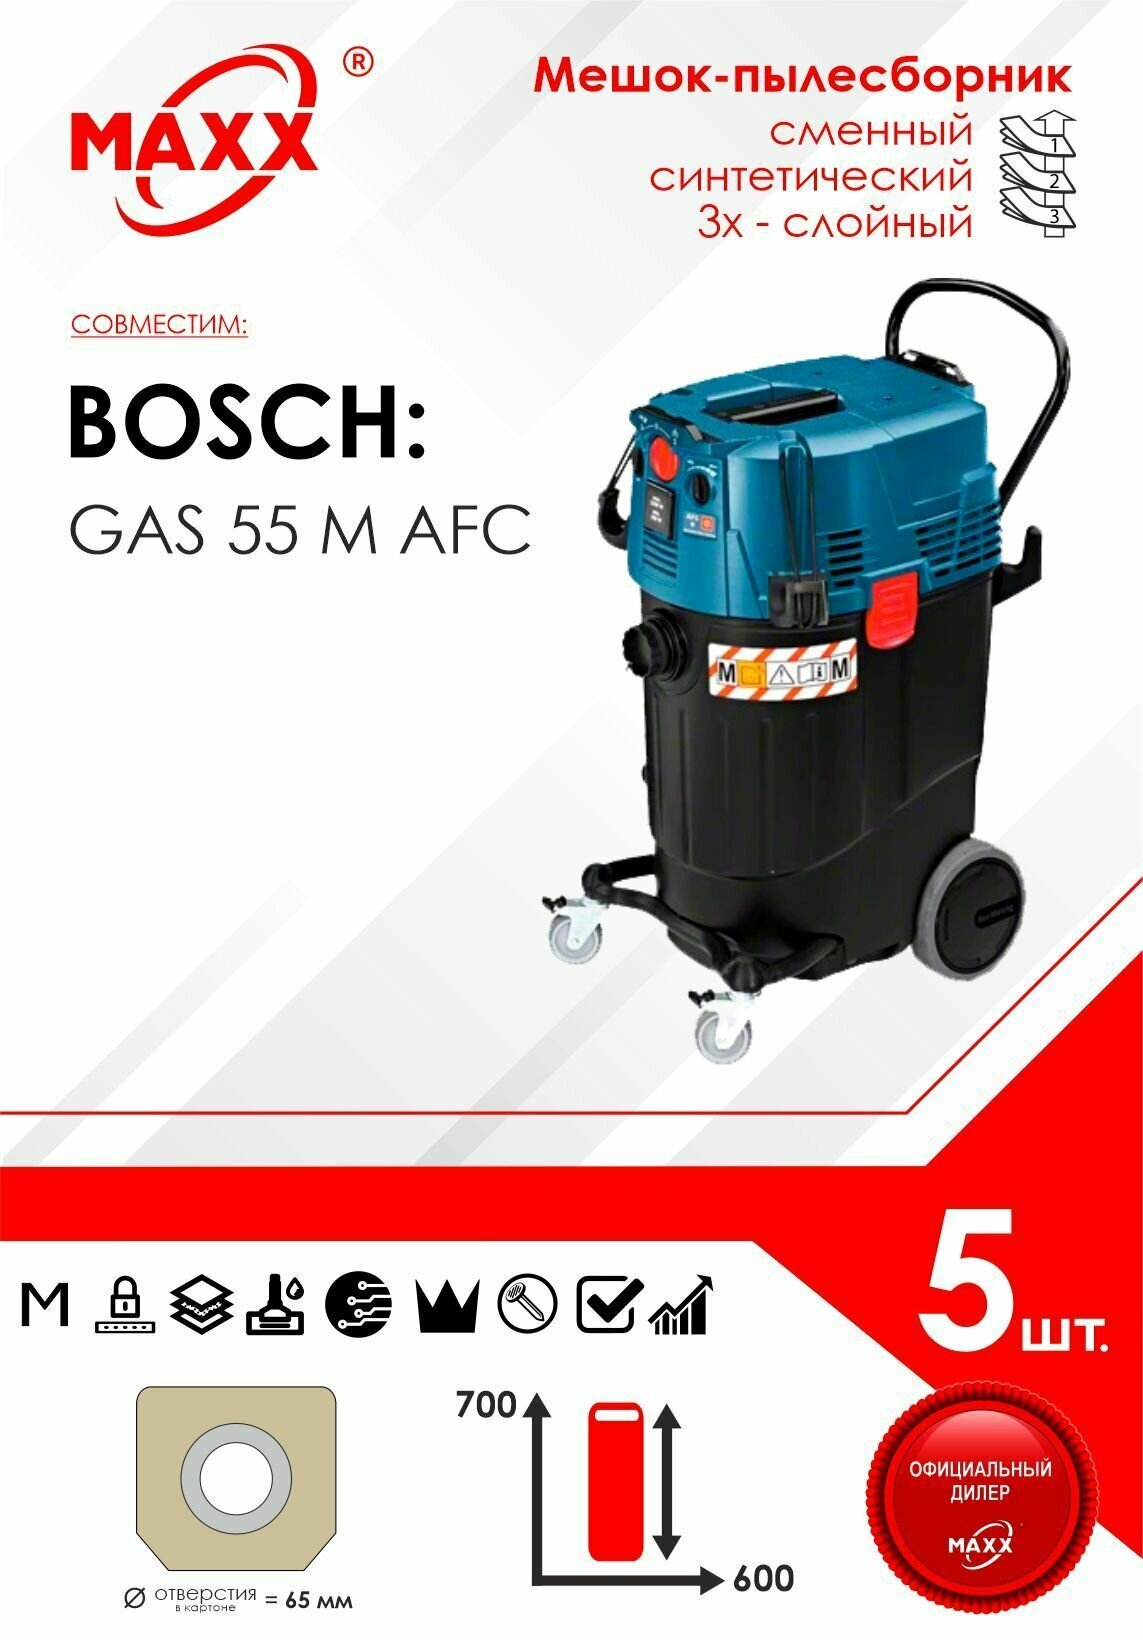 Мешок - пылесборник 5 шт. для пылесоса Bosch GAS 55 M AFC